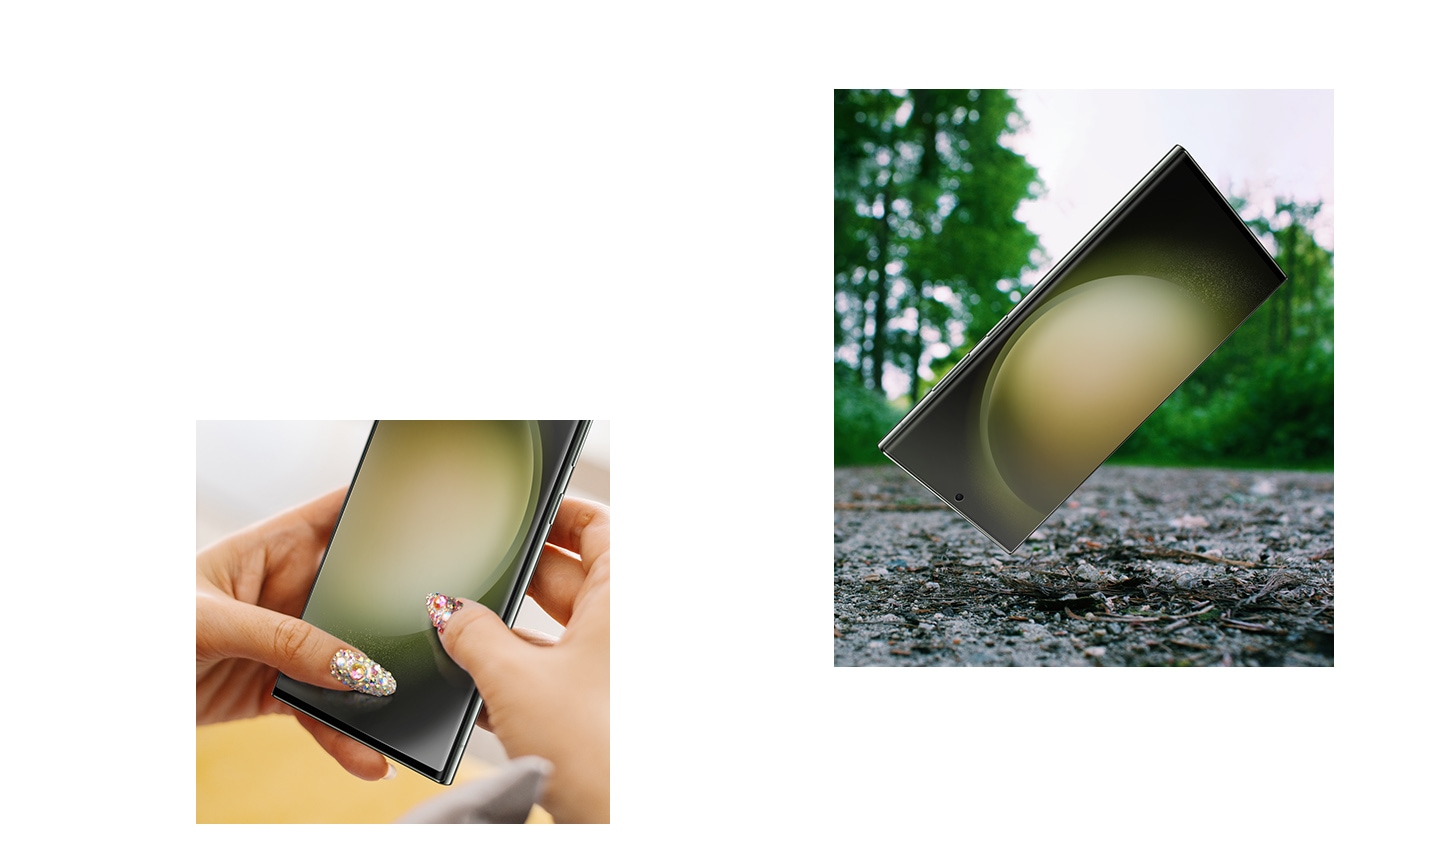 Perangkat Galaxy S23 Ultra yang menggunakan Screen Protector diletakkan di permukaan yang kasar. Dua tangan memegang ponsel Galaxy S23 Ultra yang menggunakan Screen Protector dan kukunya menggores layar ponsel untuk menyoroti lapisan antigores pada Screen Protector.